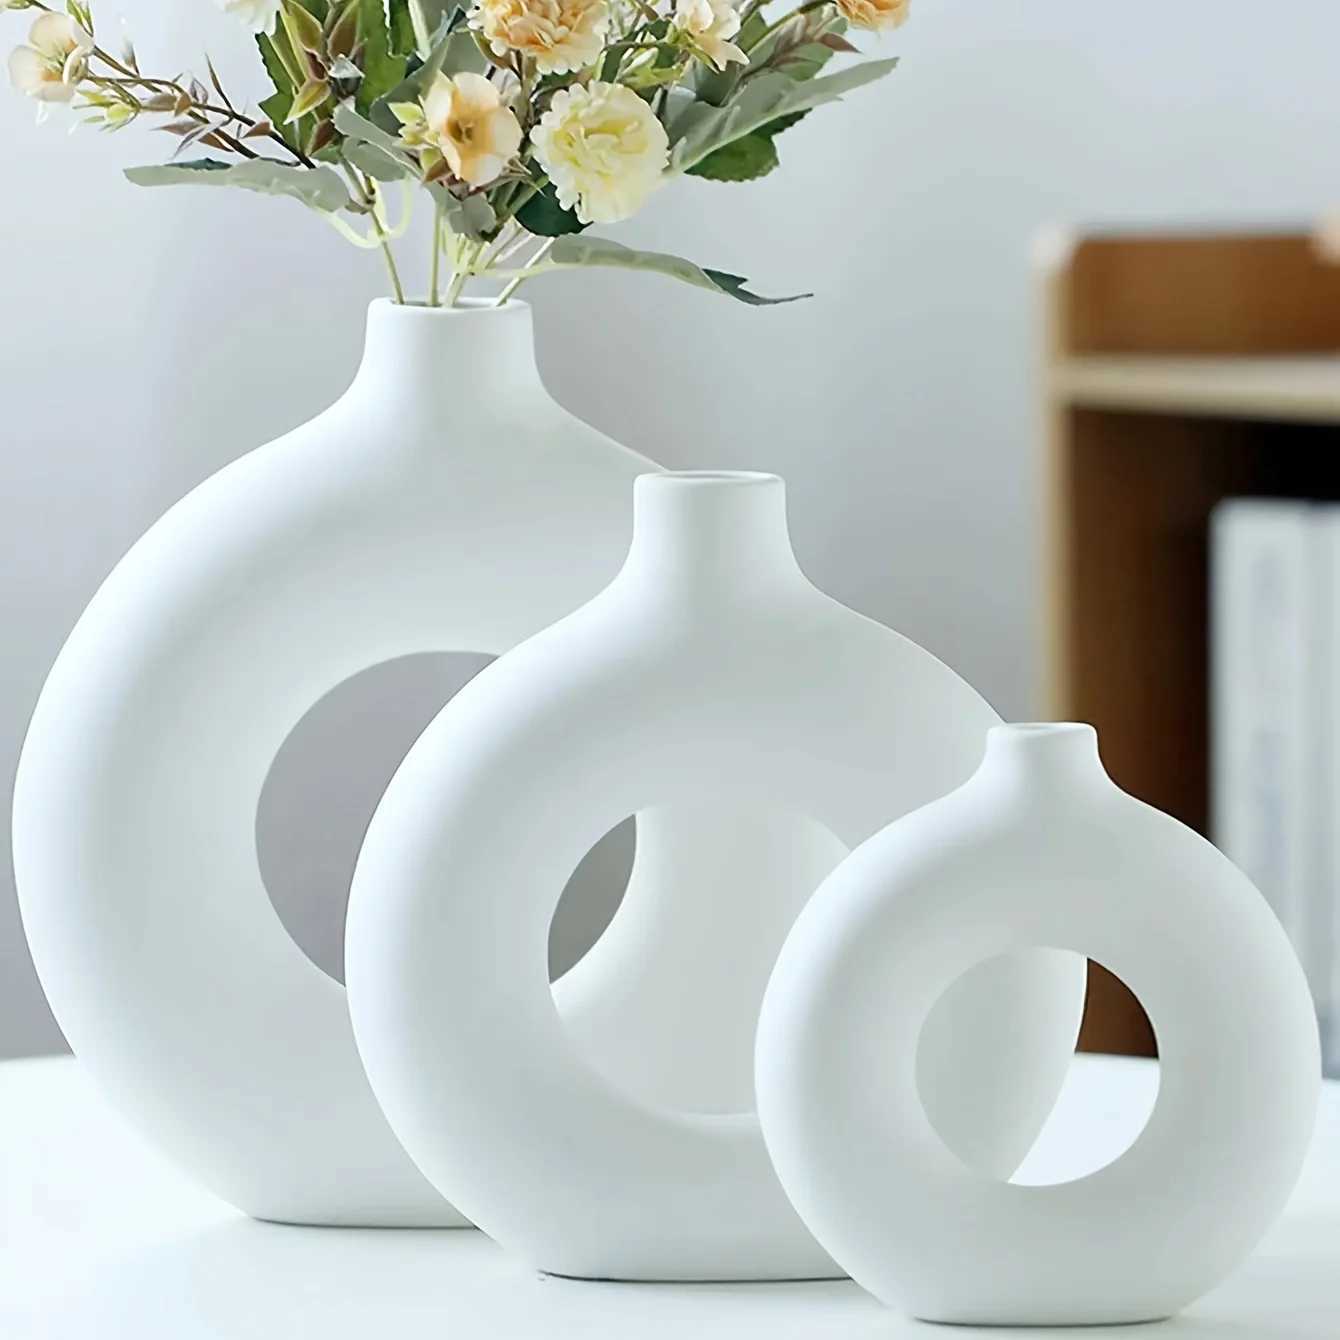 Wazony White/Beige Ceramic wazon do wystroju nowoczesne dekoracje domowe wazony boho wazony do dekoracji okrągłe wazon pączki vas